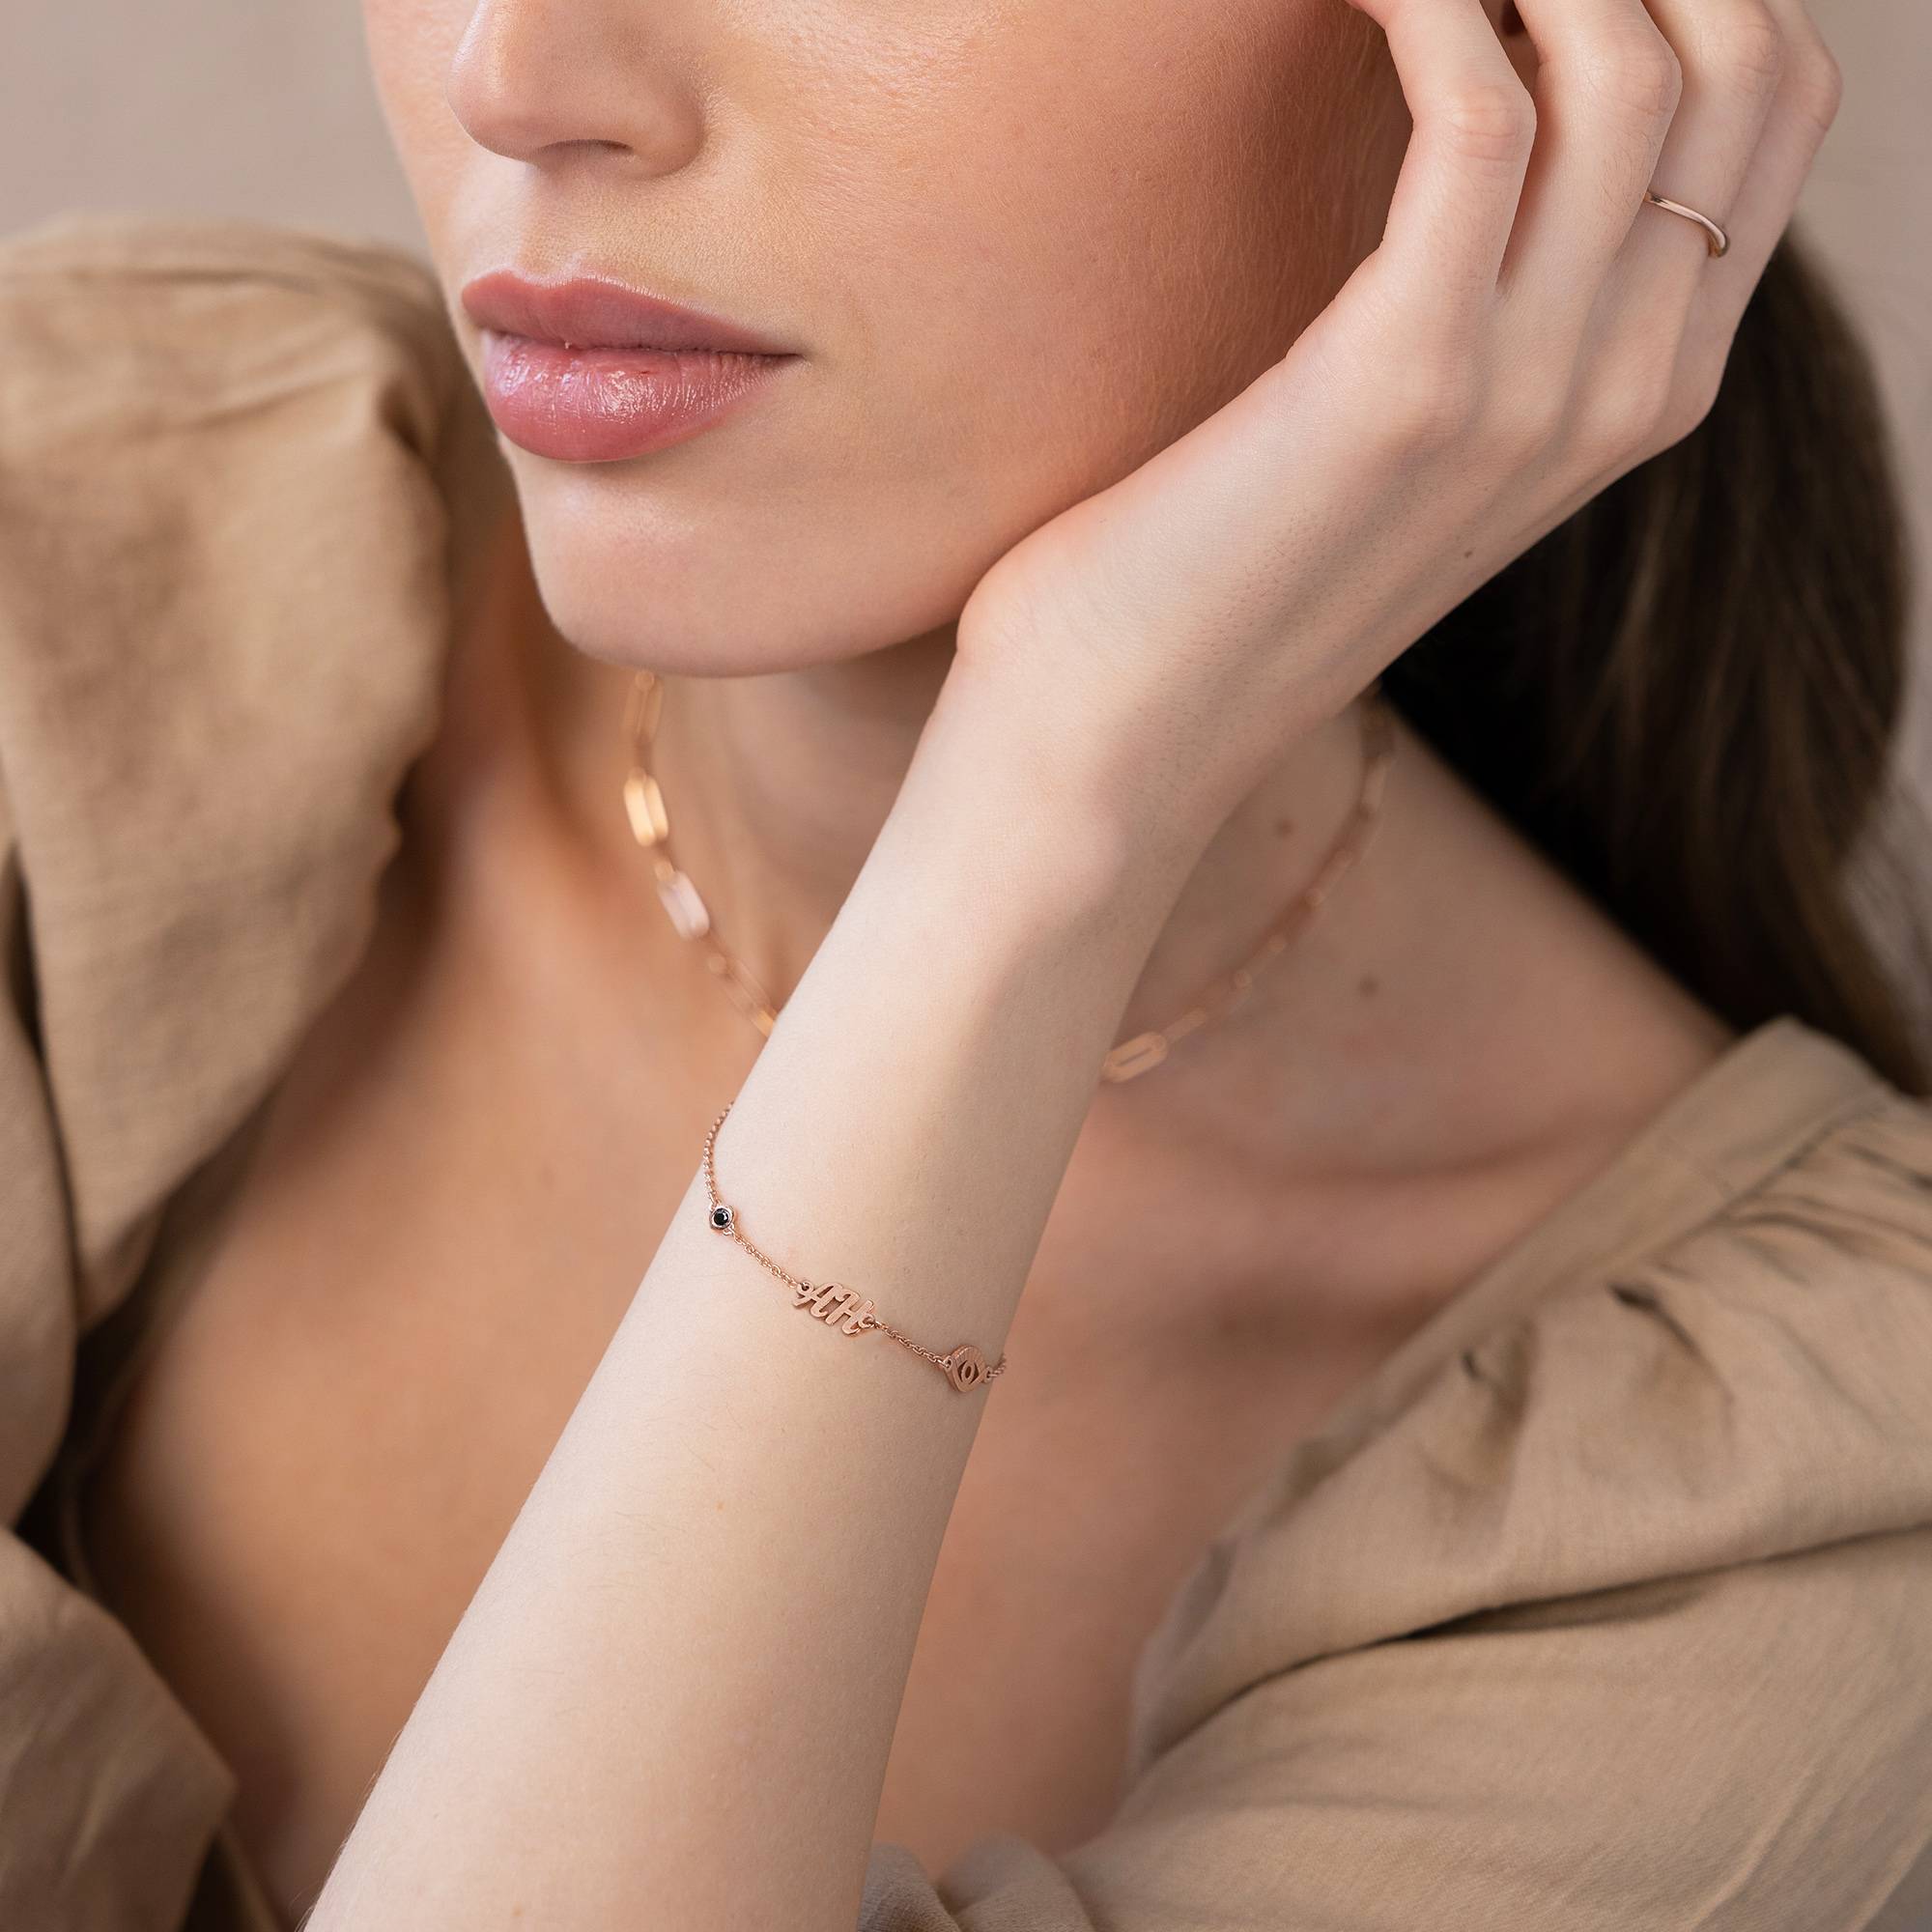 18k Rosé Vergulde Bridget Boze Oog Initiaal Armband/Enkelbandje met Edelsteen-2 Productfoto